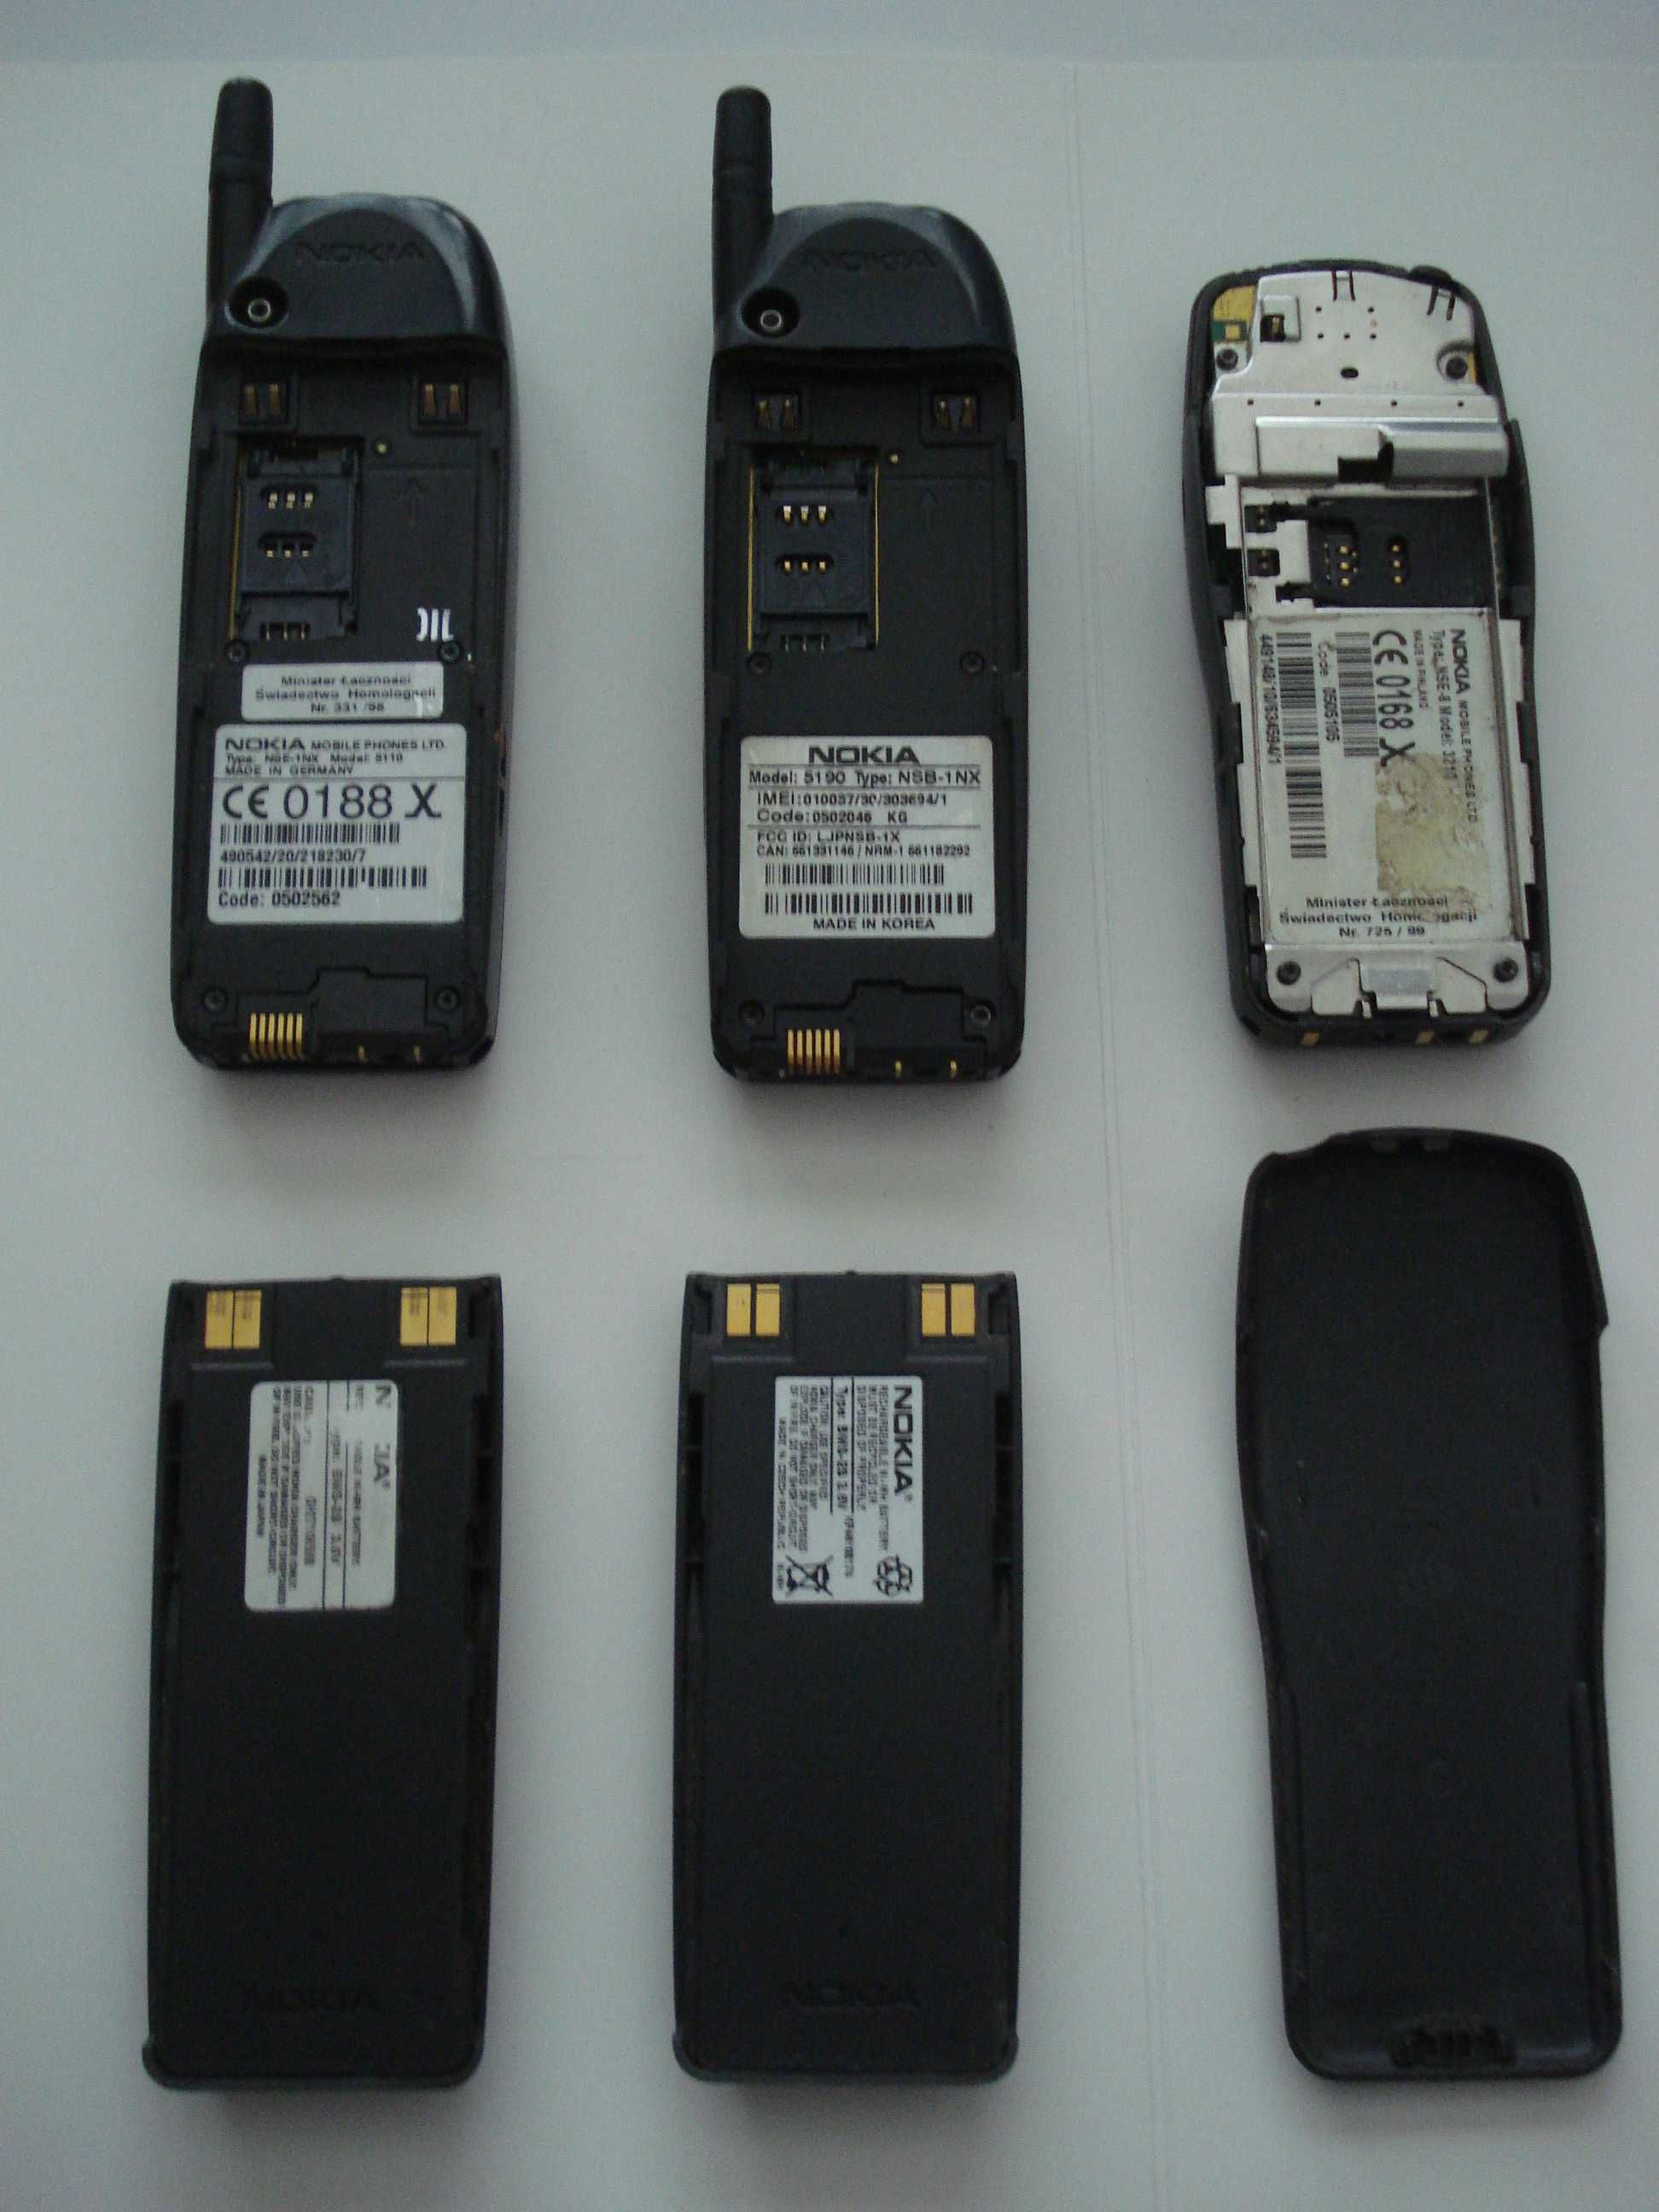 NOKIA 5110, NOKIA 5190, NOKIA 3210 vintage GSM